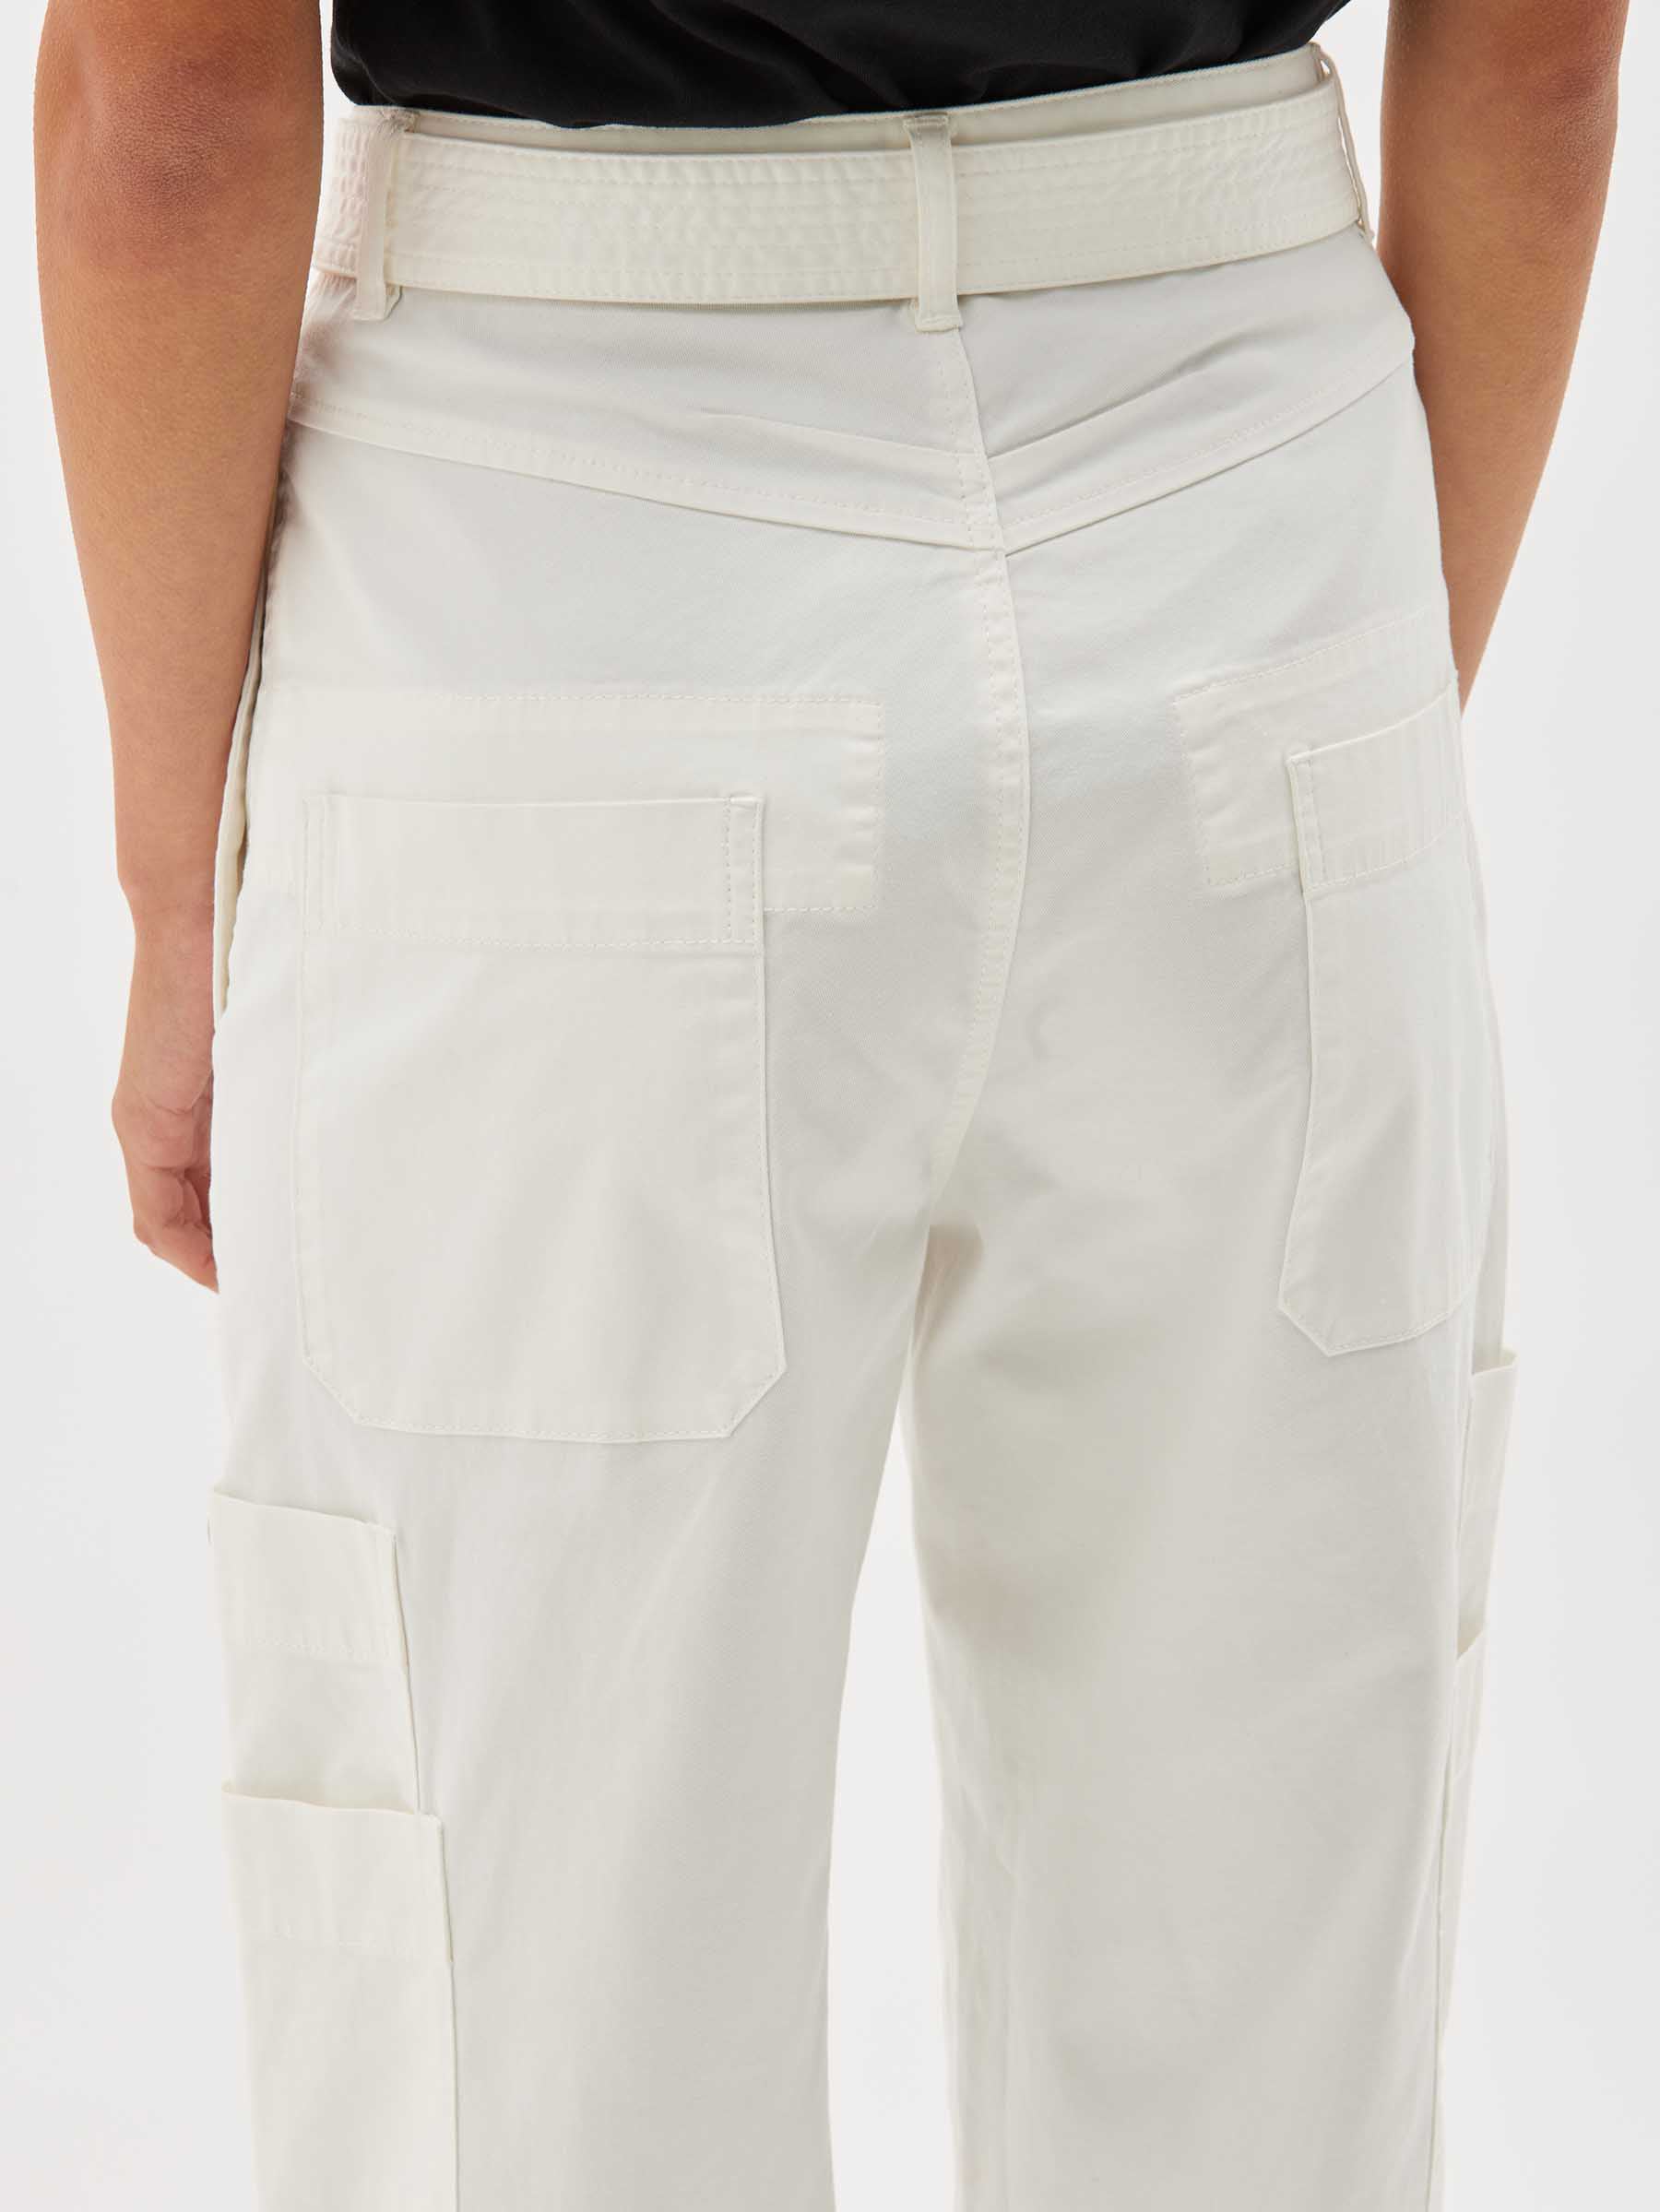 【新品再入荷】23SS kontor / Belted Back Pleat Pants パンツ